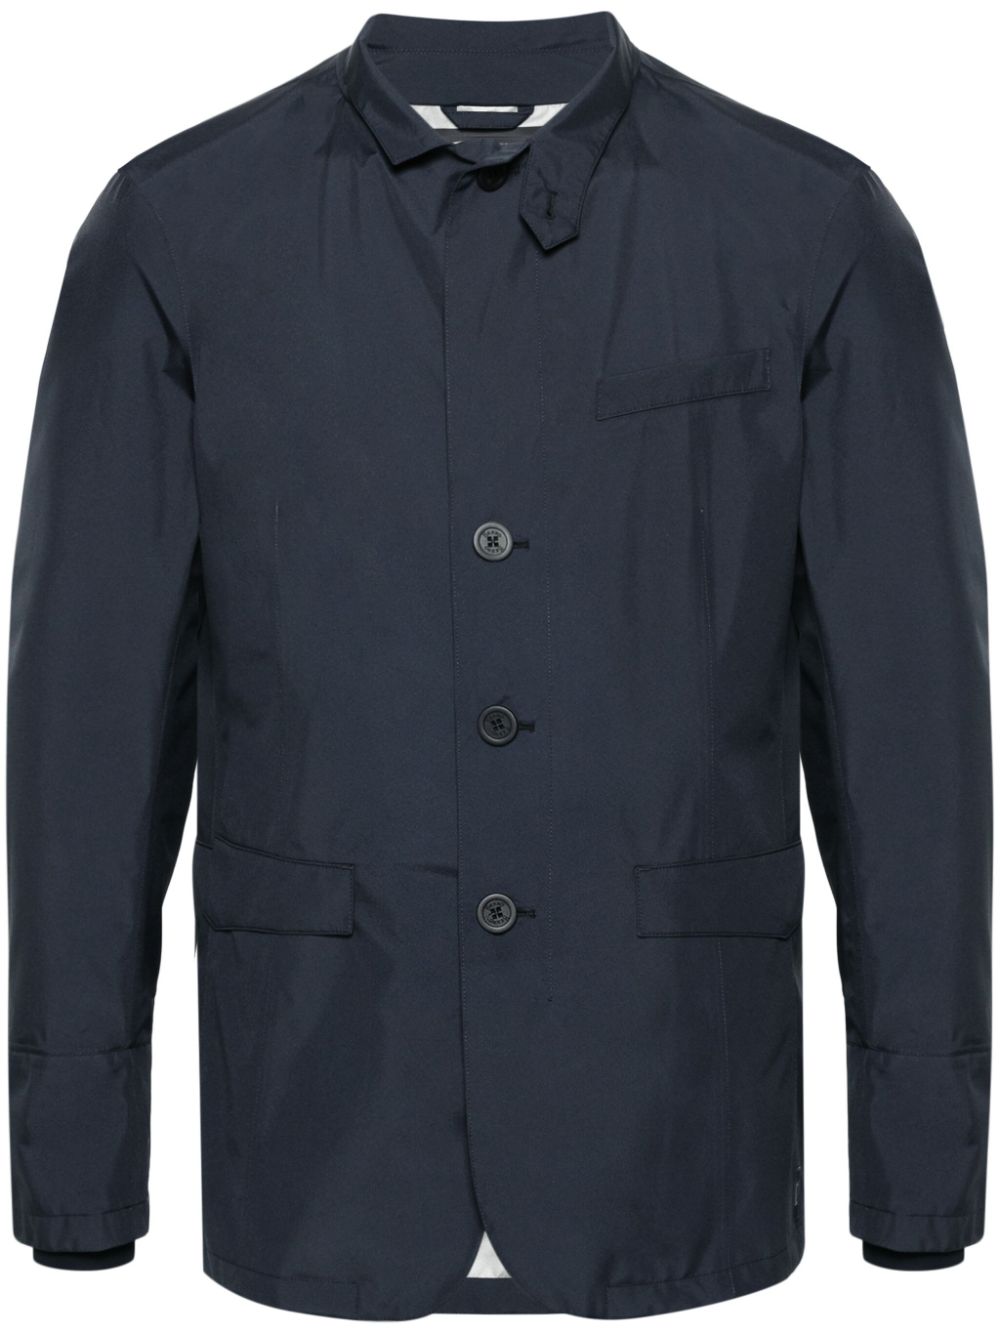 Áo khoác nhẹ màu xanh dương cho nam - Bộ sưu tập SS24